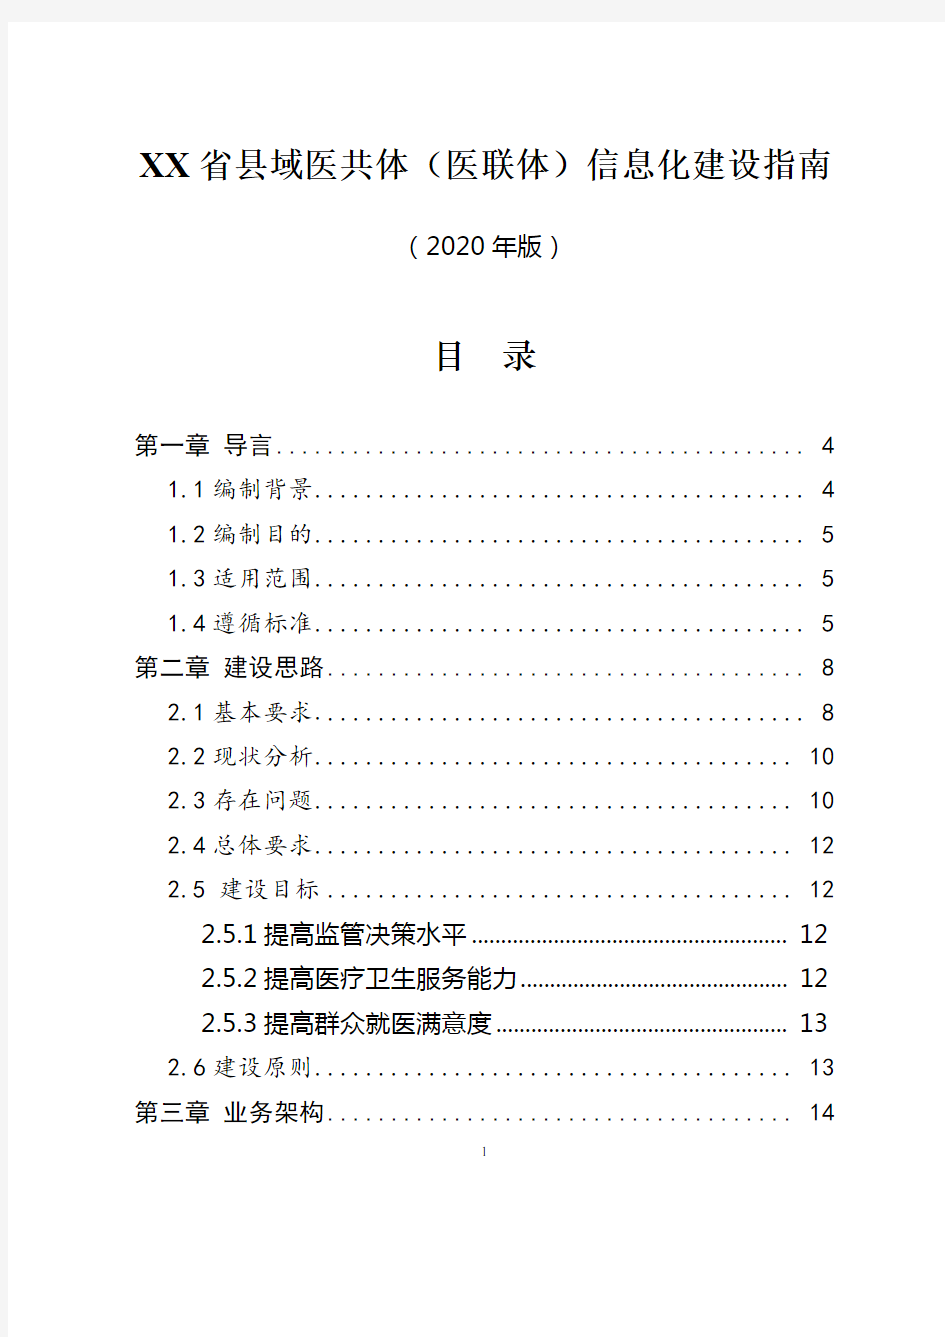 县域医共体(医联体)信息化建设指南(2020年版)